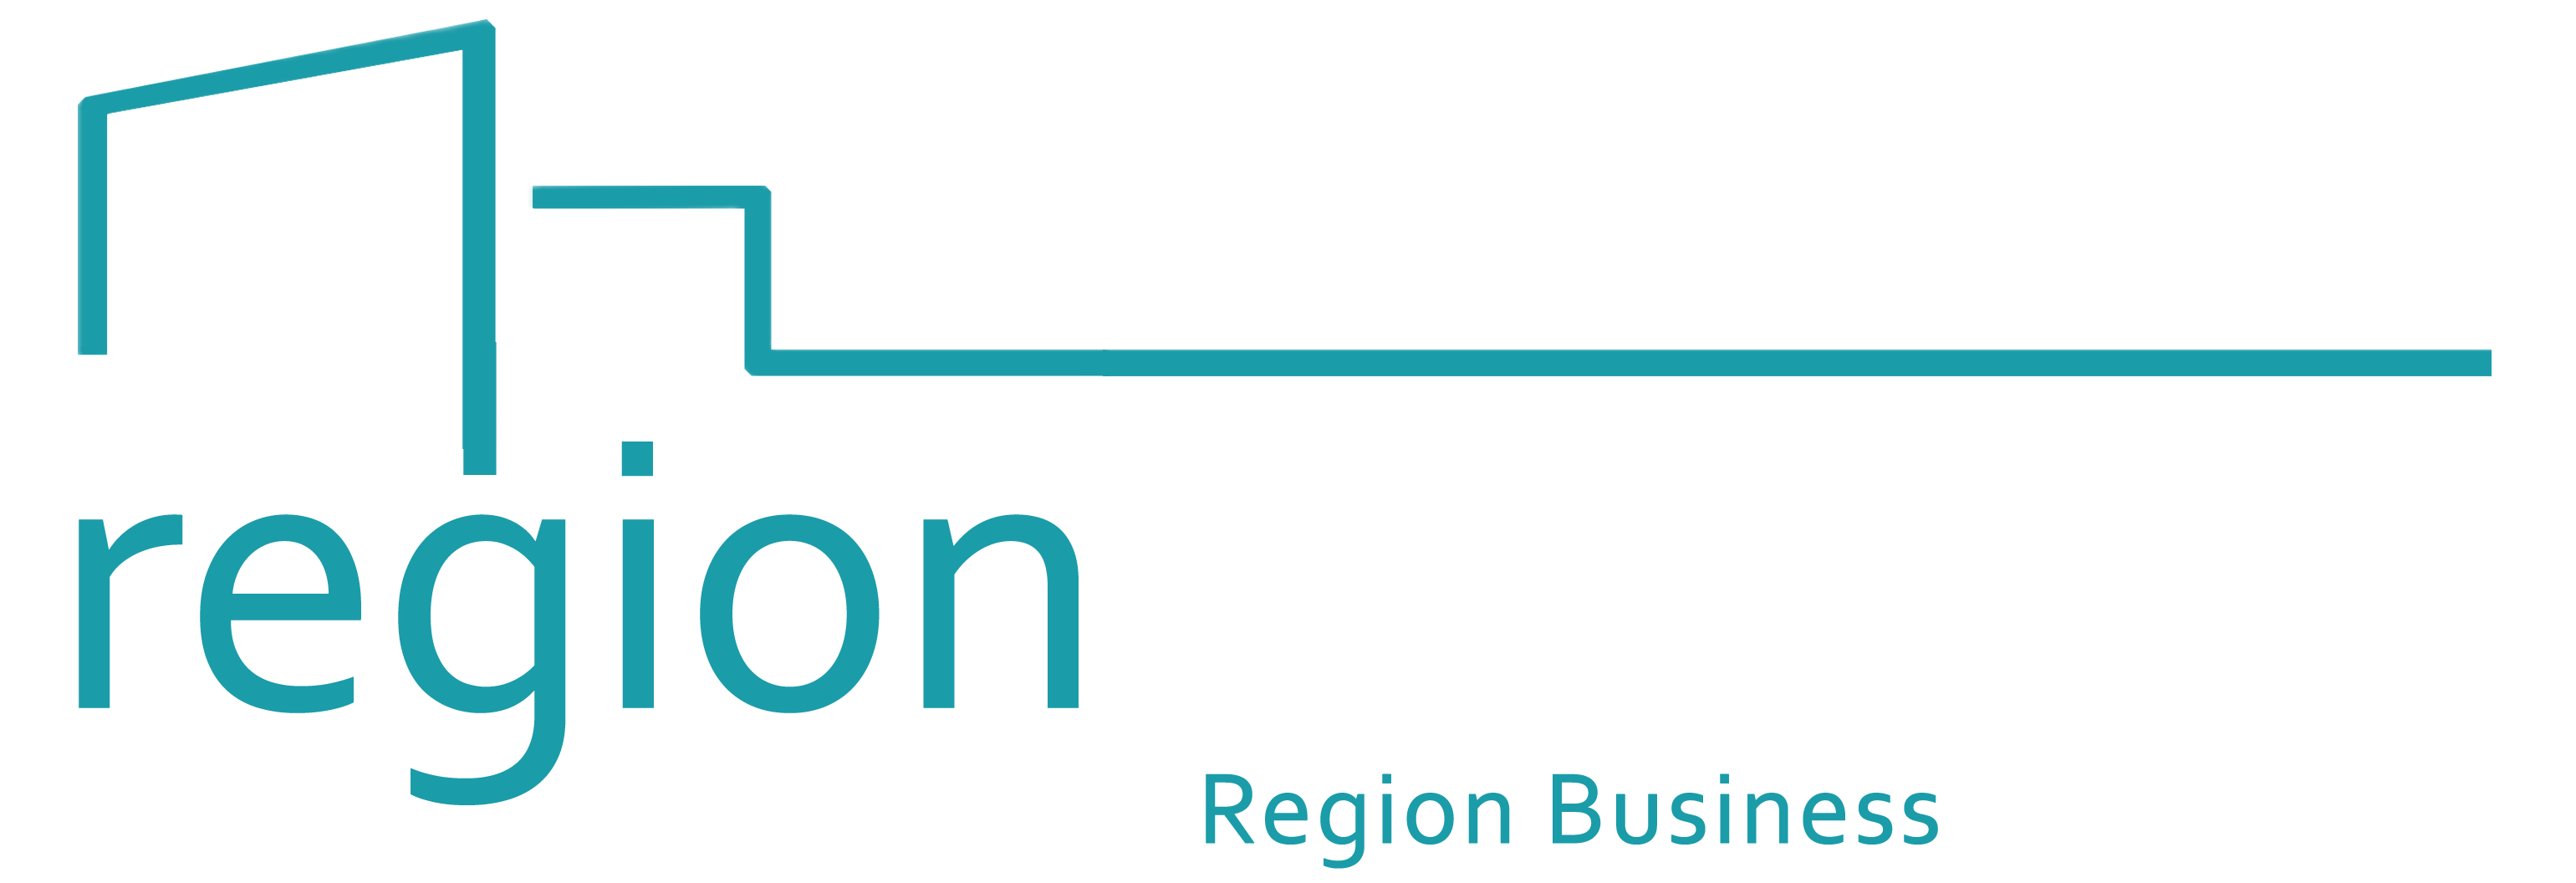 Sacramento Region Business Association